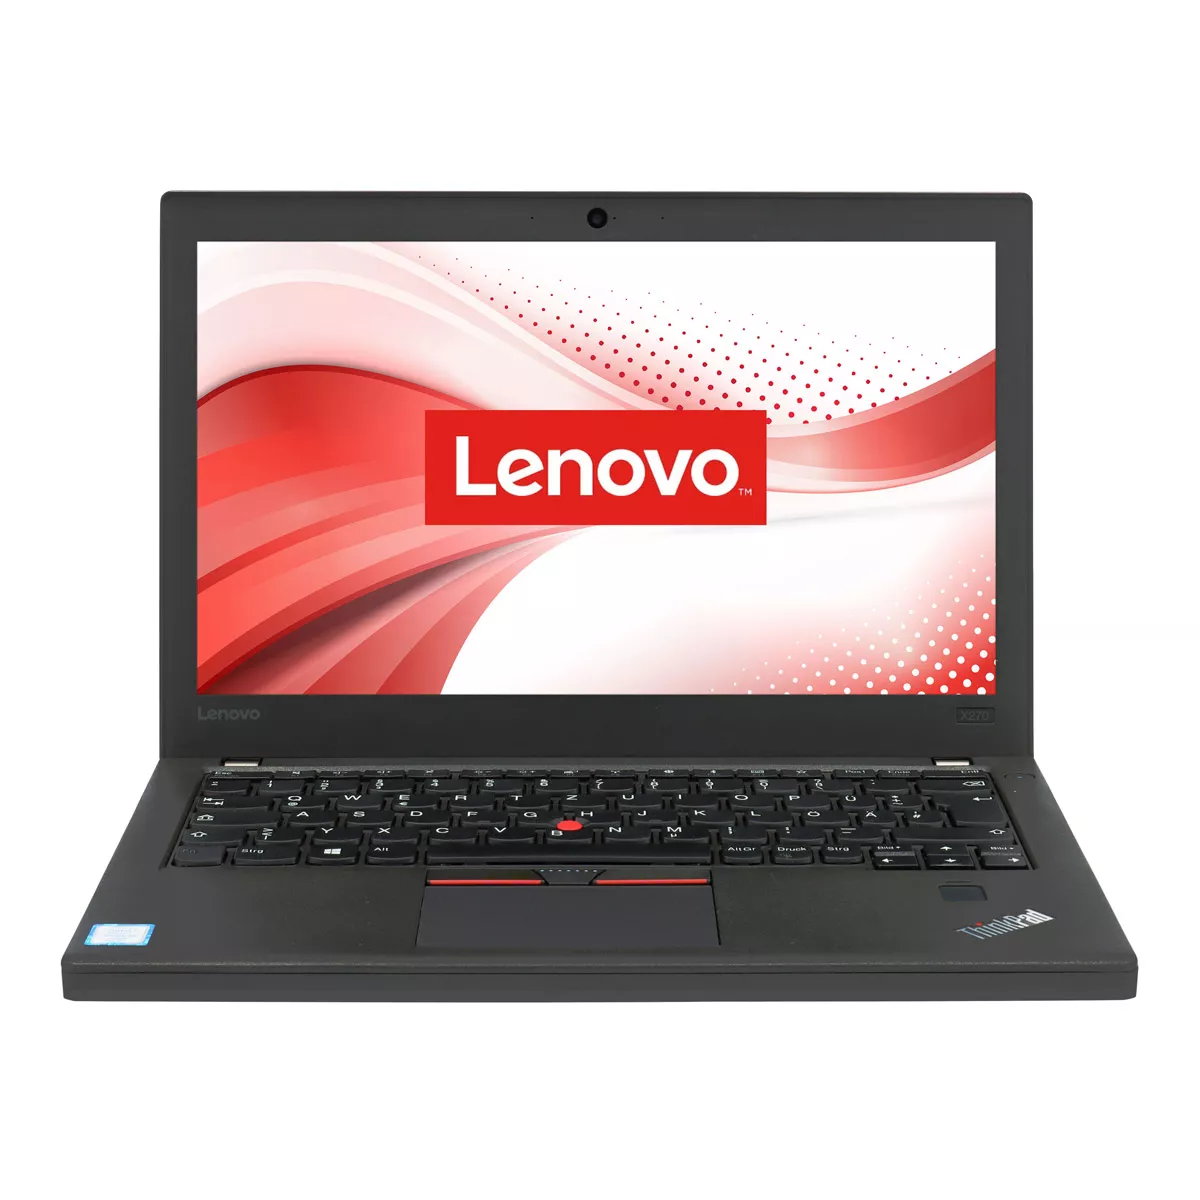 Lenovo ThinkPad A275 AMD A12-8830B 8 GB 240 GB SSD Webcam A+